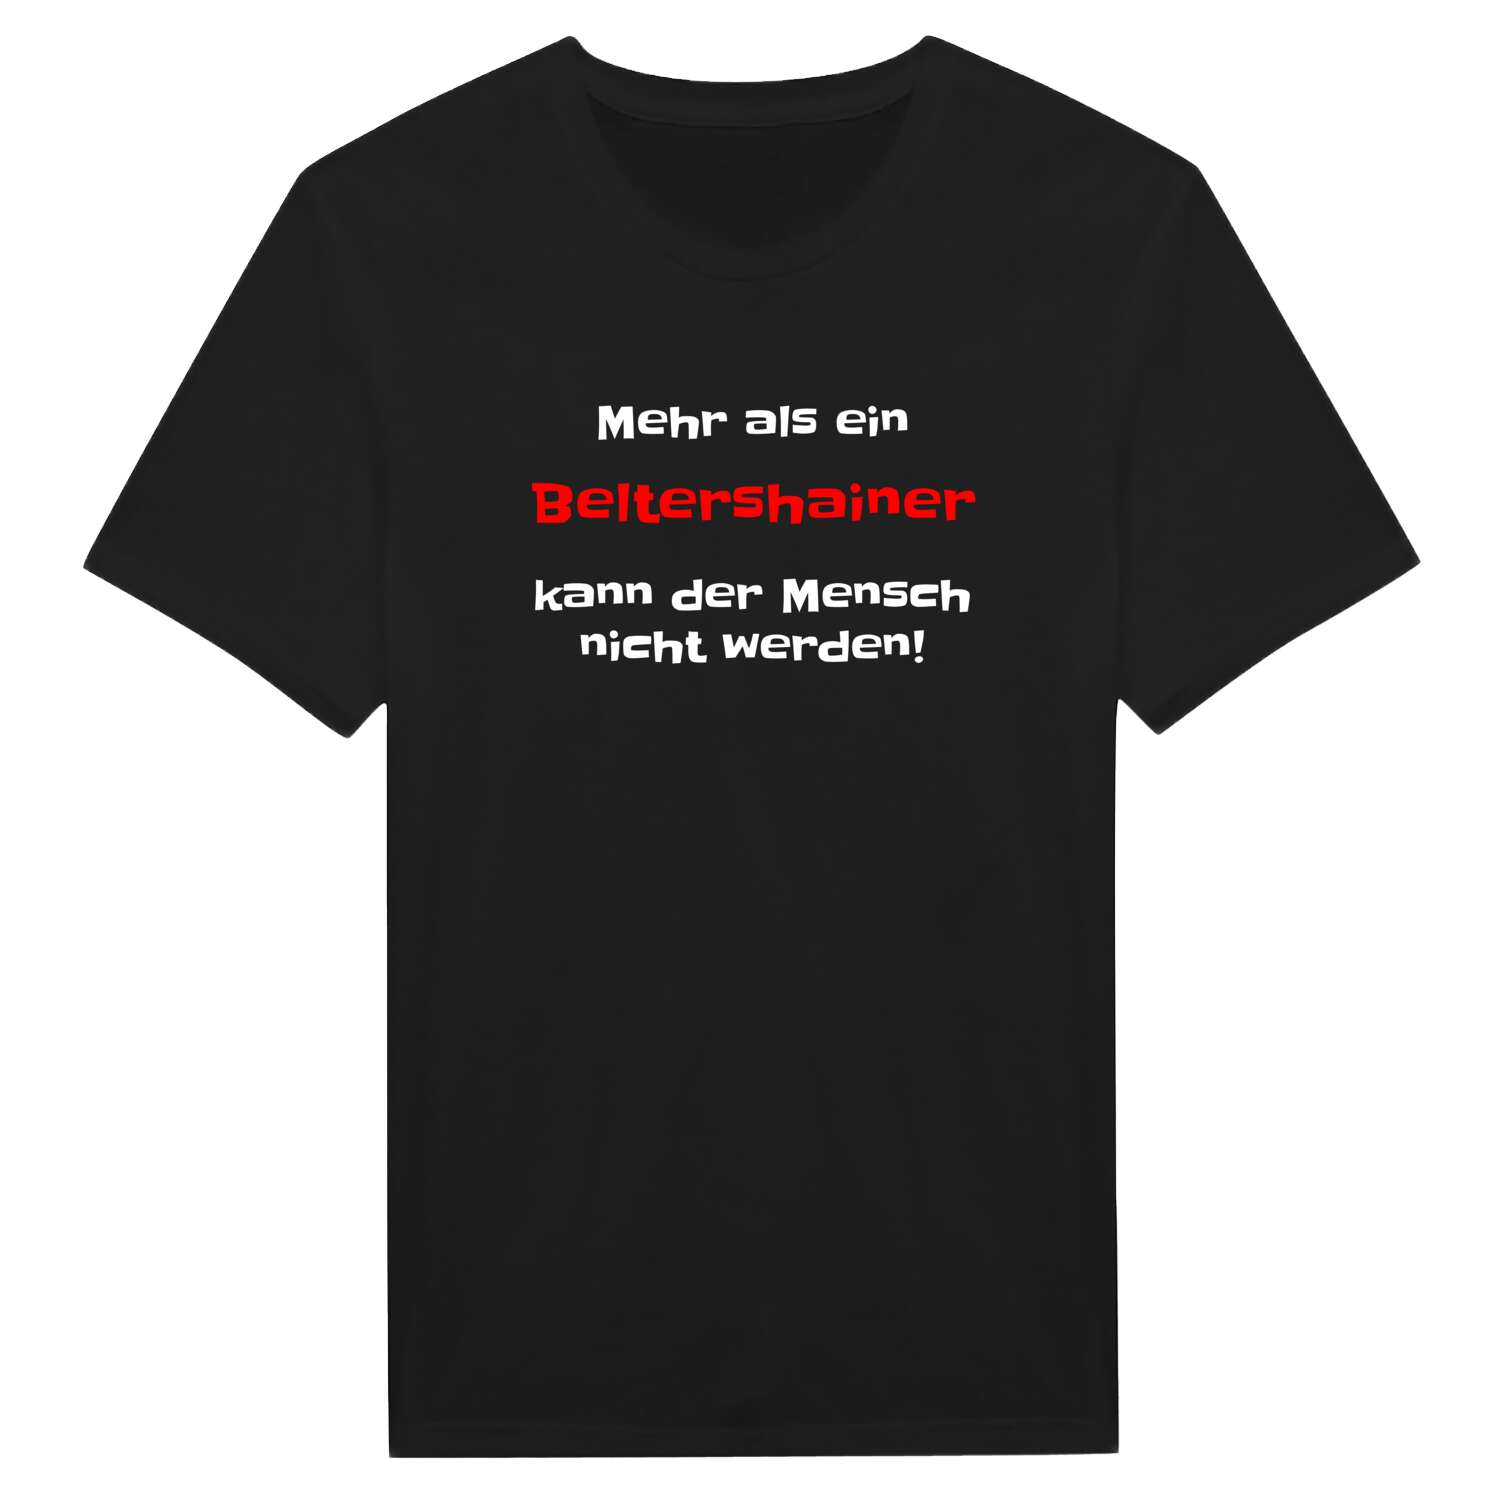 Beltershain T-Shirt »Mehr als ein«